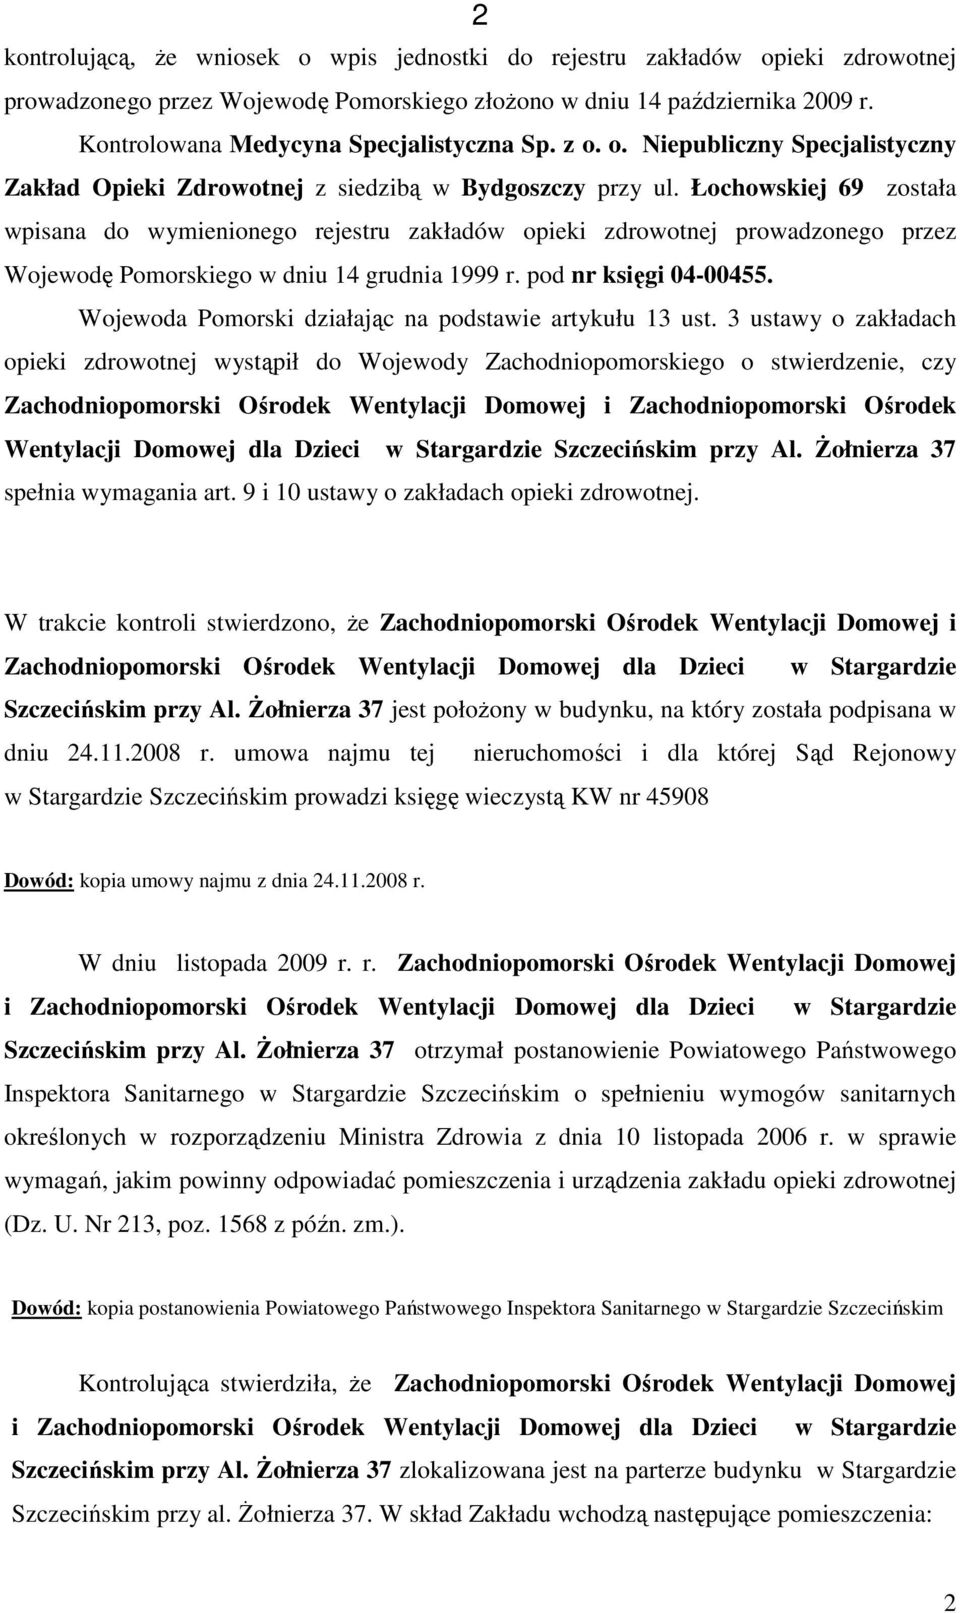 Łochowskiej 69 została wpisana do wymienionego rejestru zakładów opieki zdrowotnej prowadzonego przez Wojewodę Pomorskiego w dniu 14 grudnia 1999 r. pod nr księgi 04-00455.